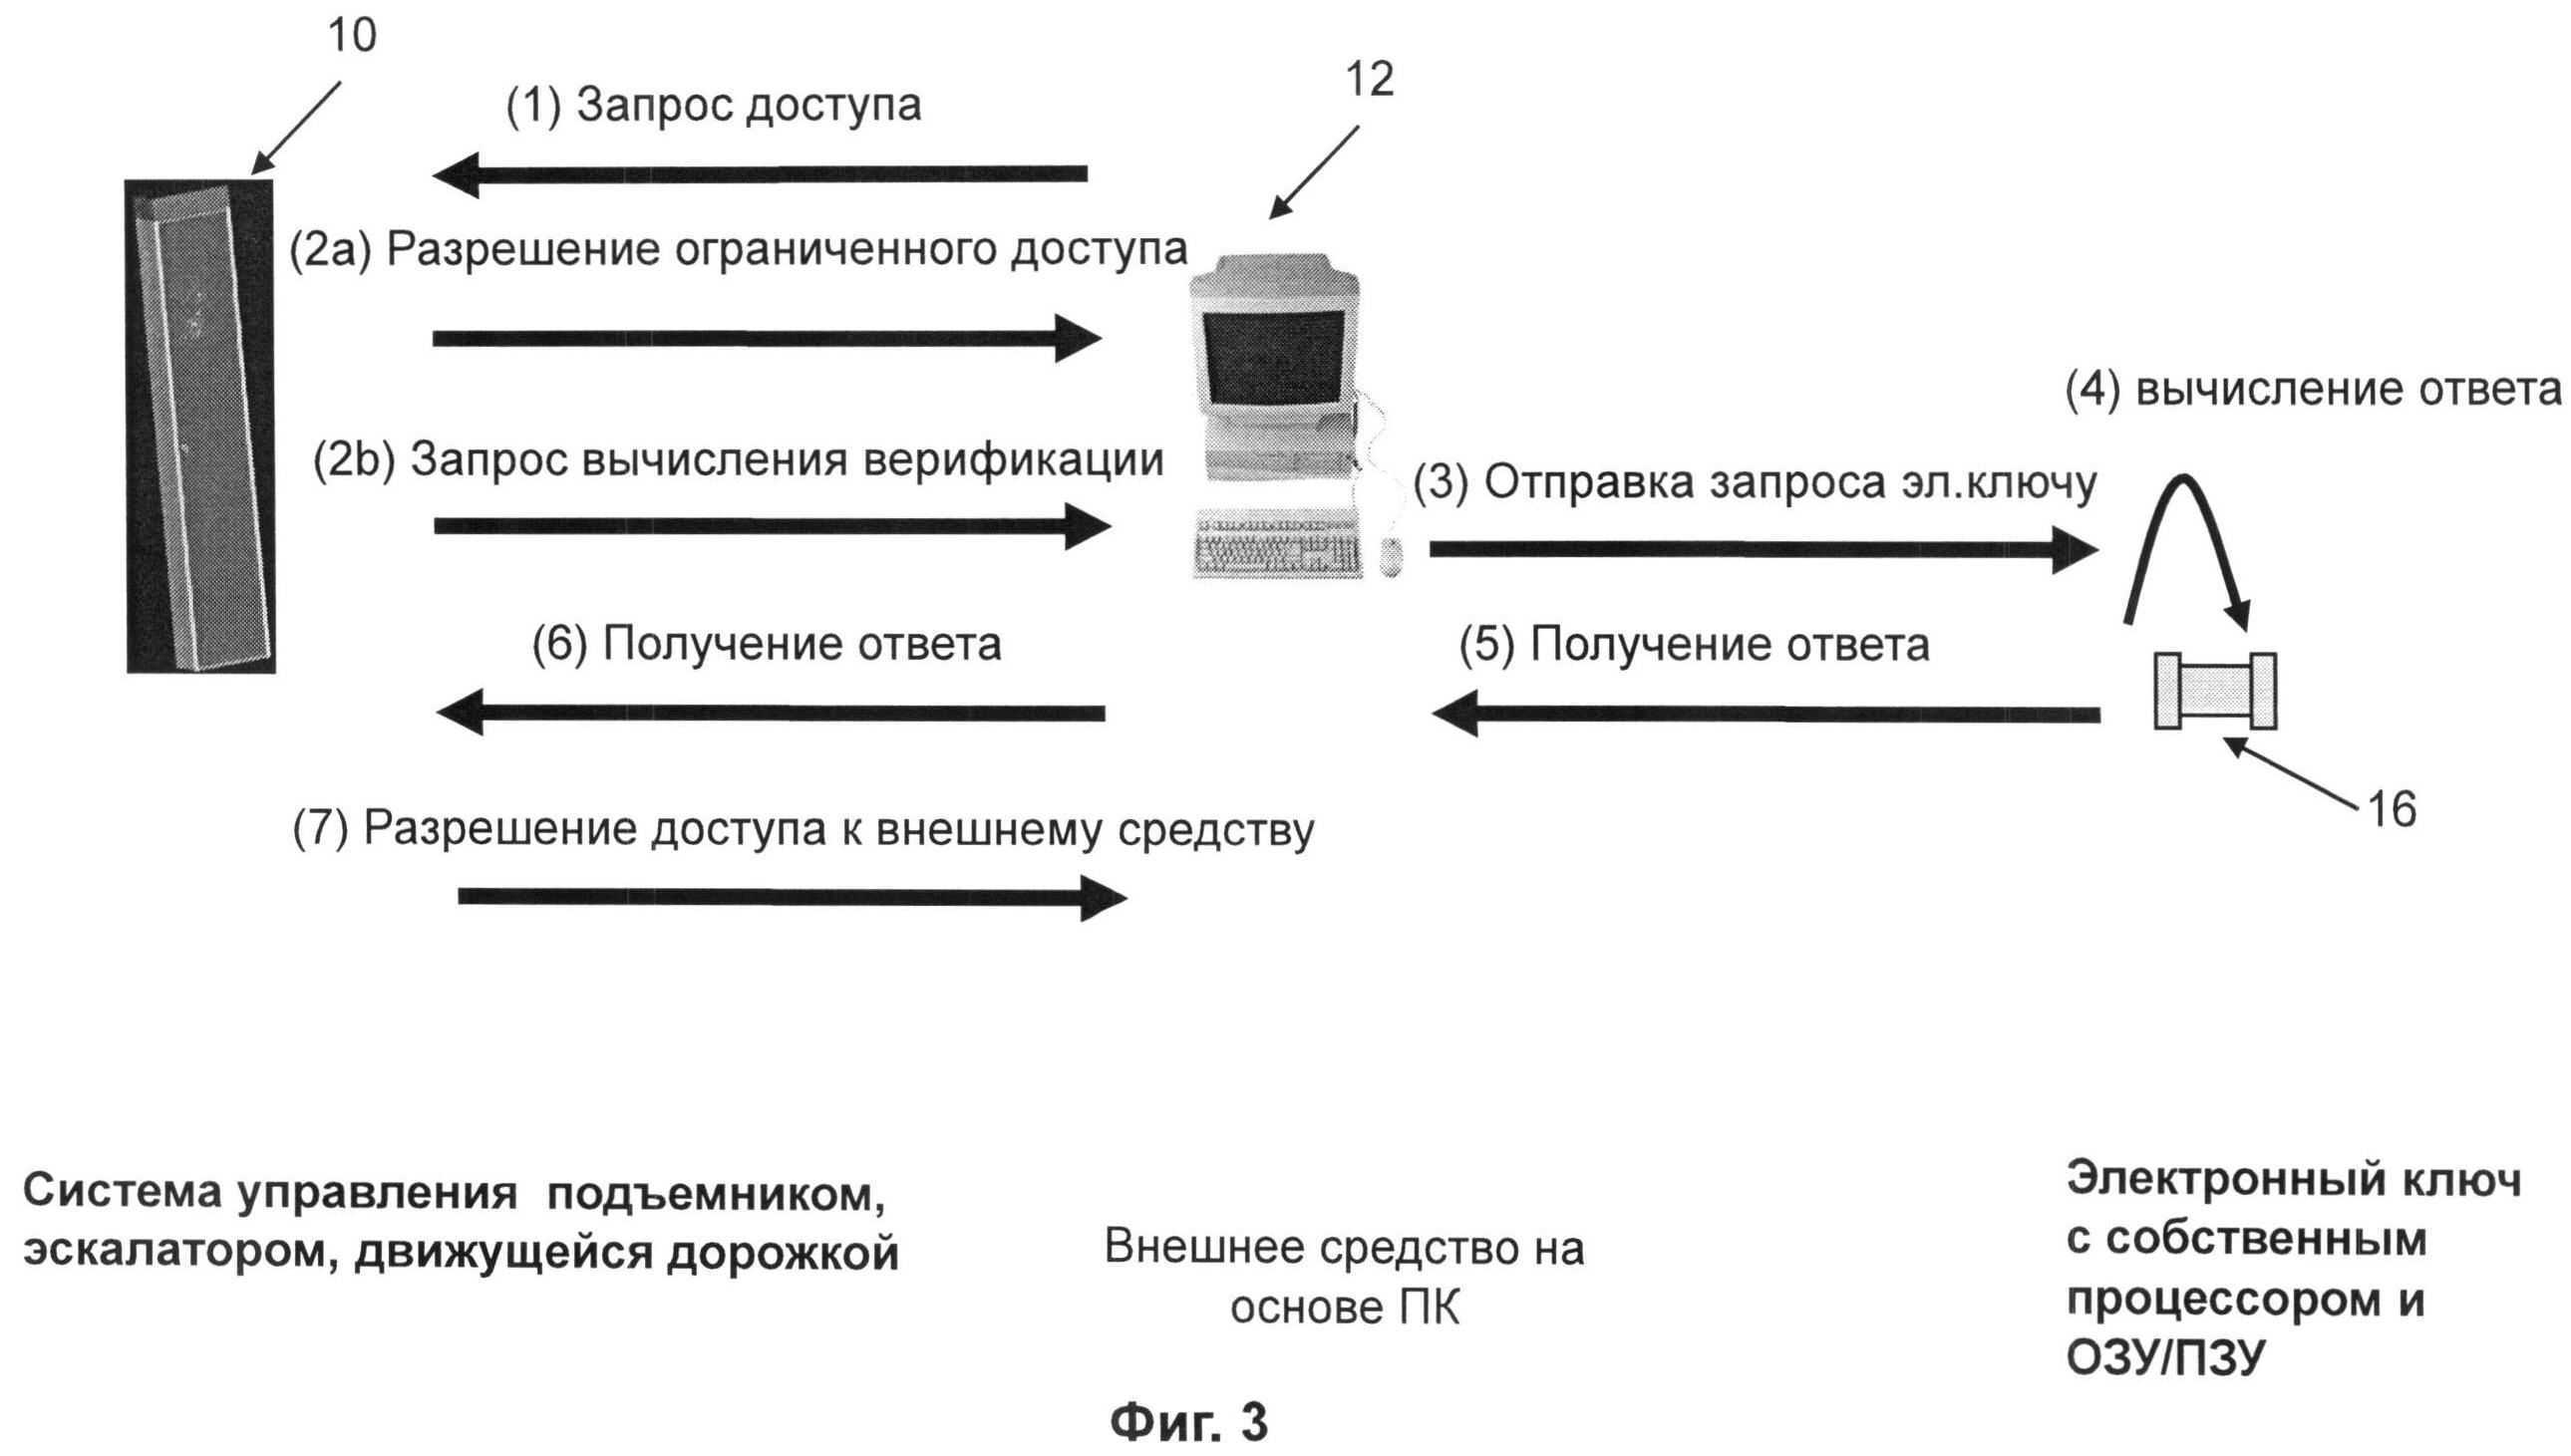 Полное руководство по active directory, от установки и настройки до аудита безопасности. ч. 7: понимание инфраструктуры active directory - hackware.ru